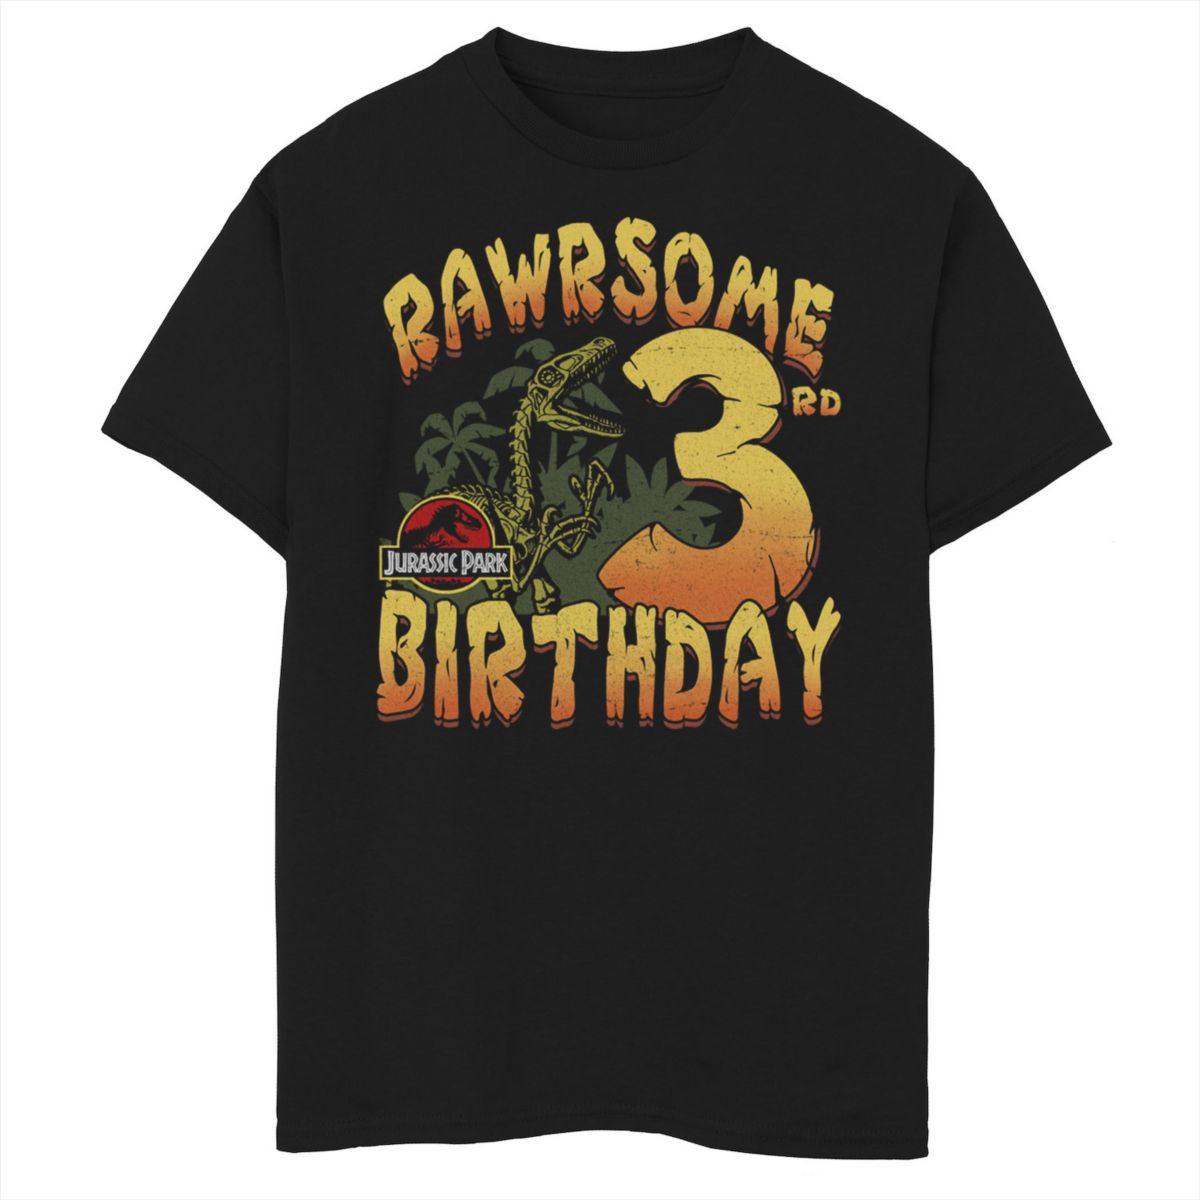 Футболка для мальчиков 8-20 Jurassic Park Rawrsome с рисунком на третий день рождения Jurassic Park